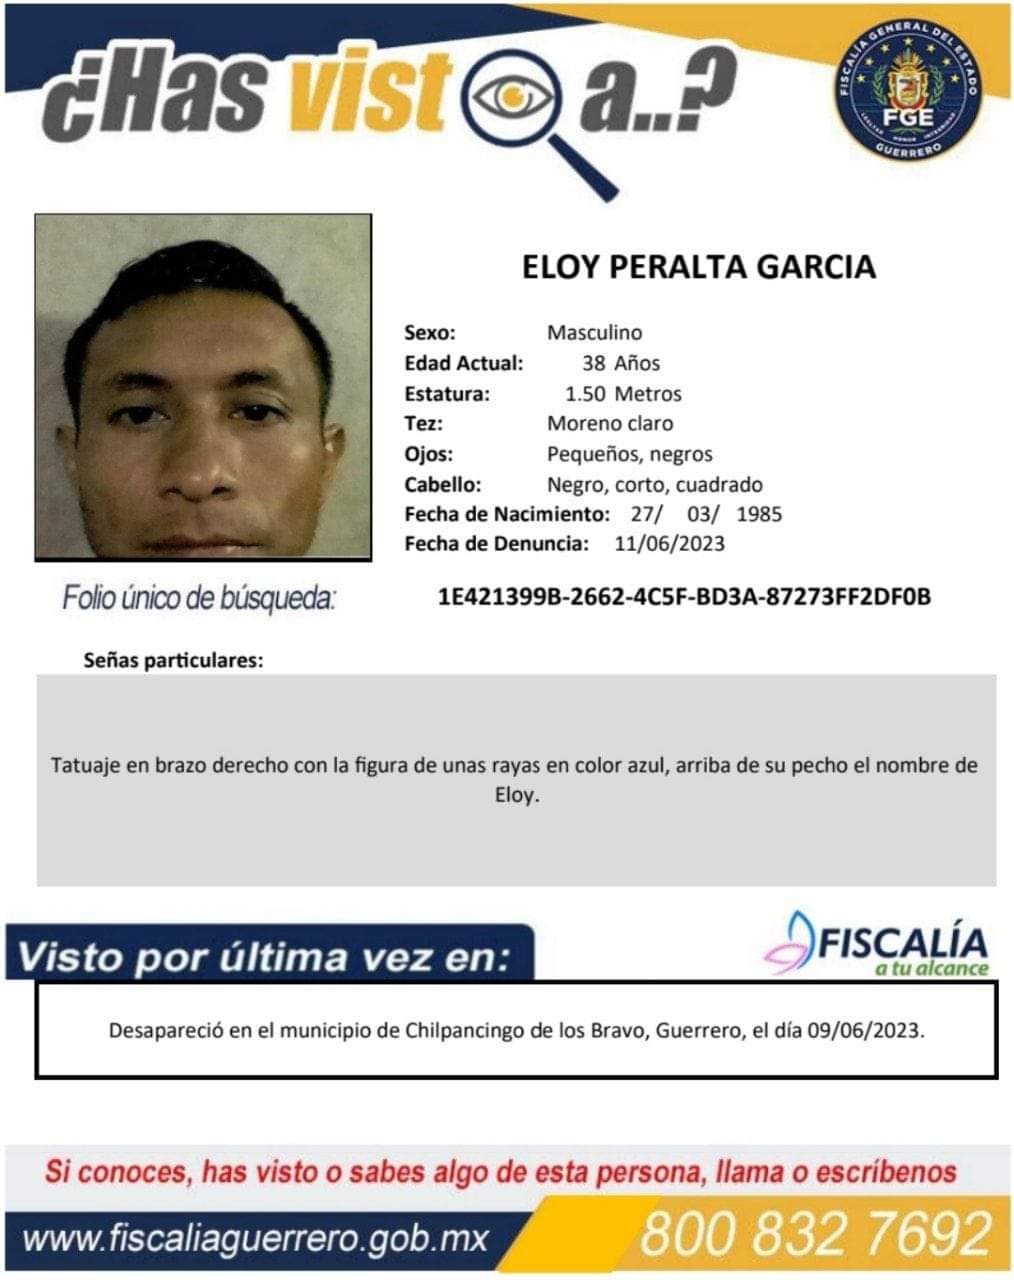 Fiscalía General del Estado solicita su colaboración para localizar a Eloy Peralta García